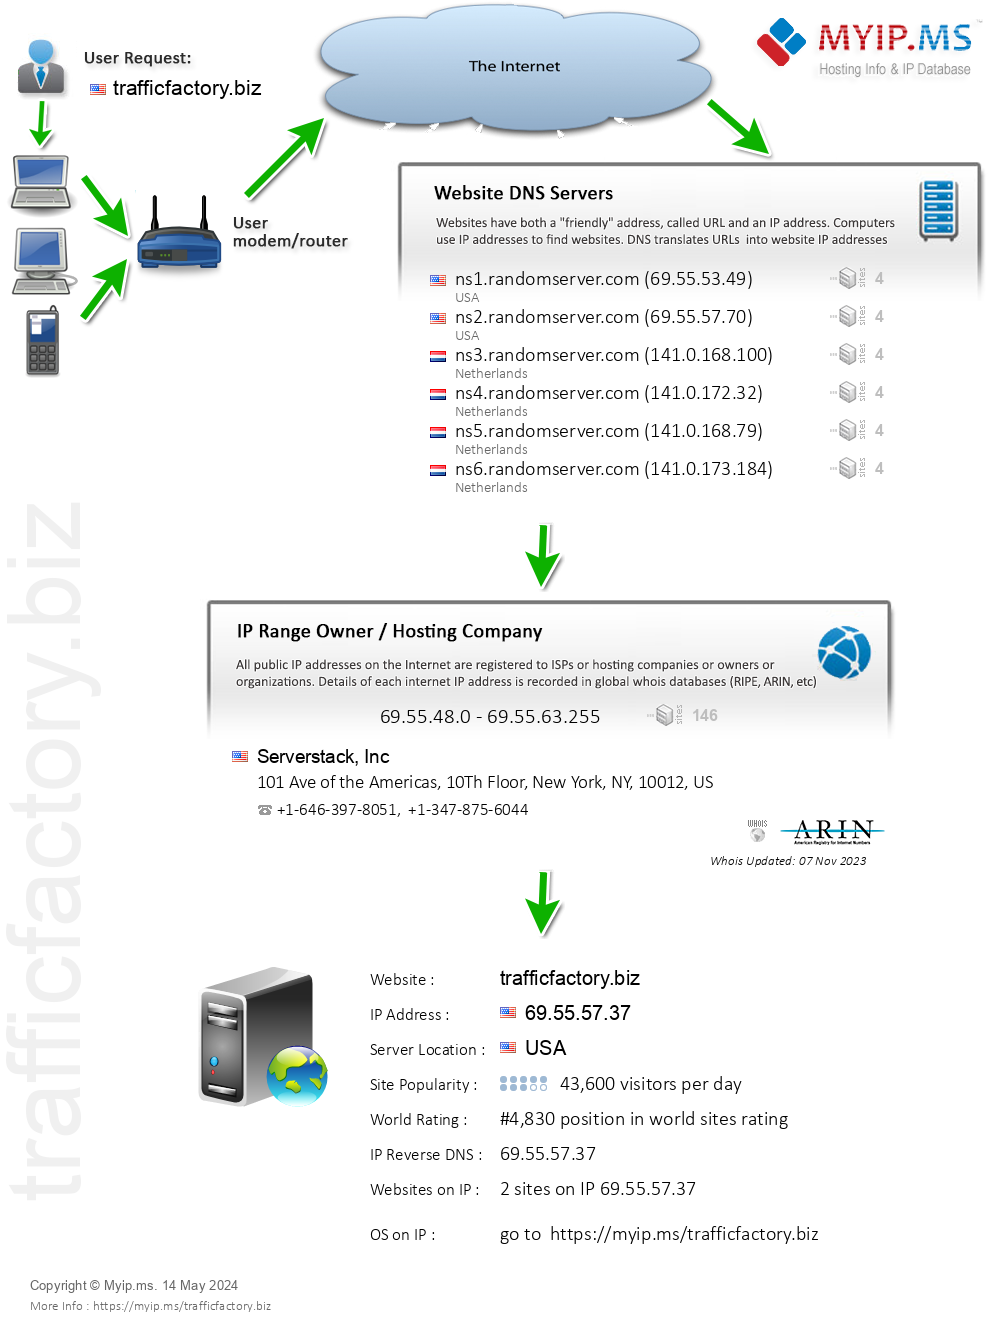 Trafficfactory.biz - Website Hosting Visual IP Diagram